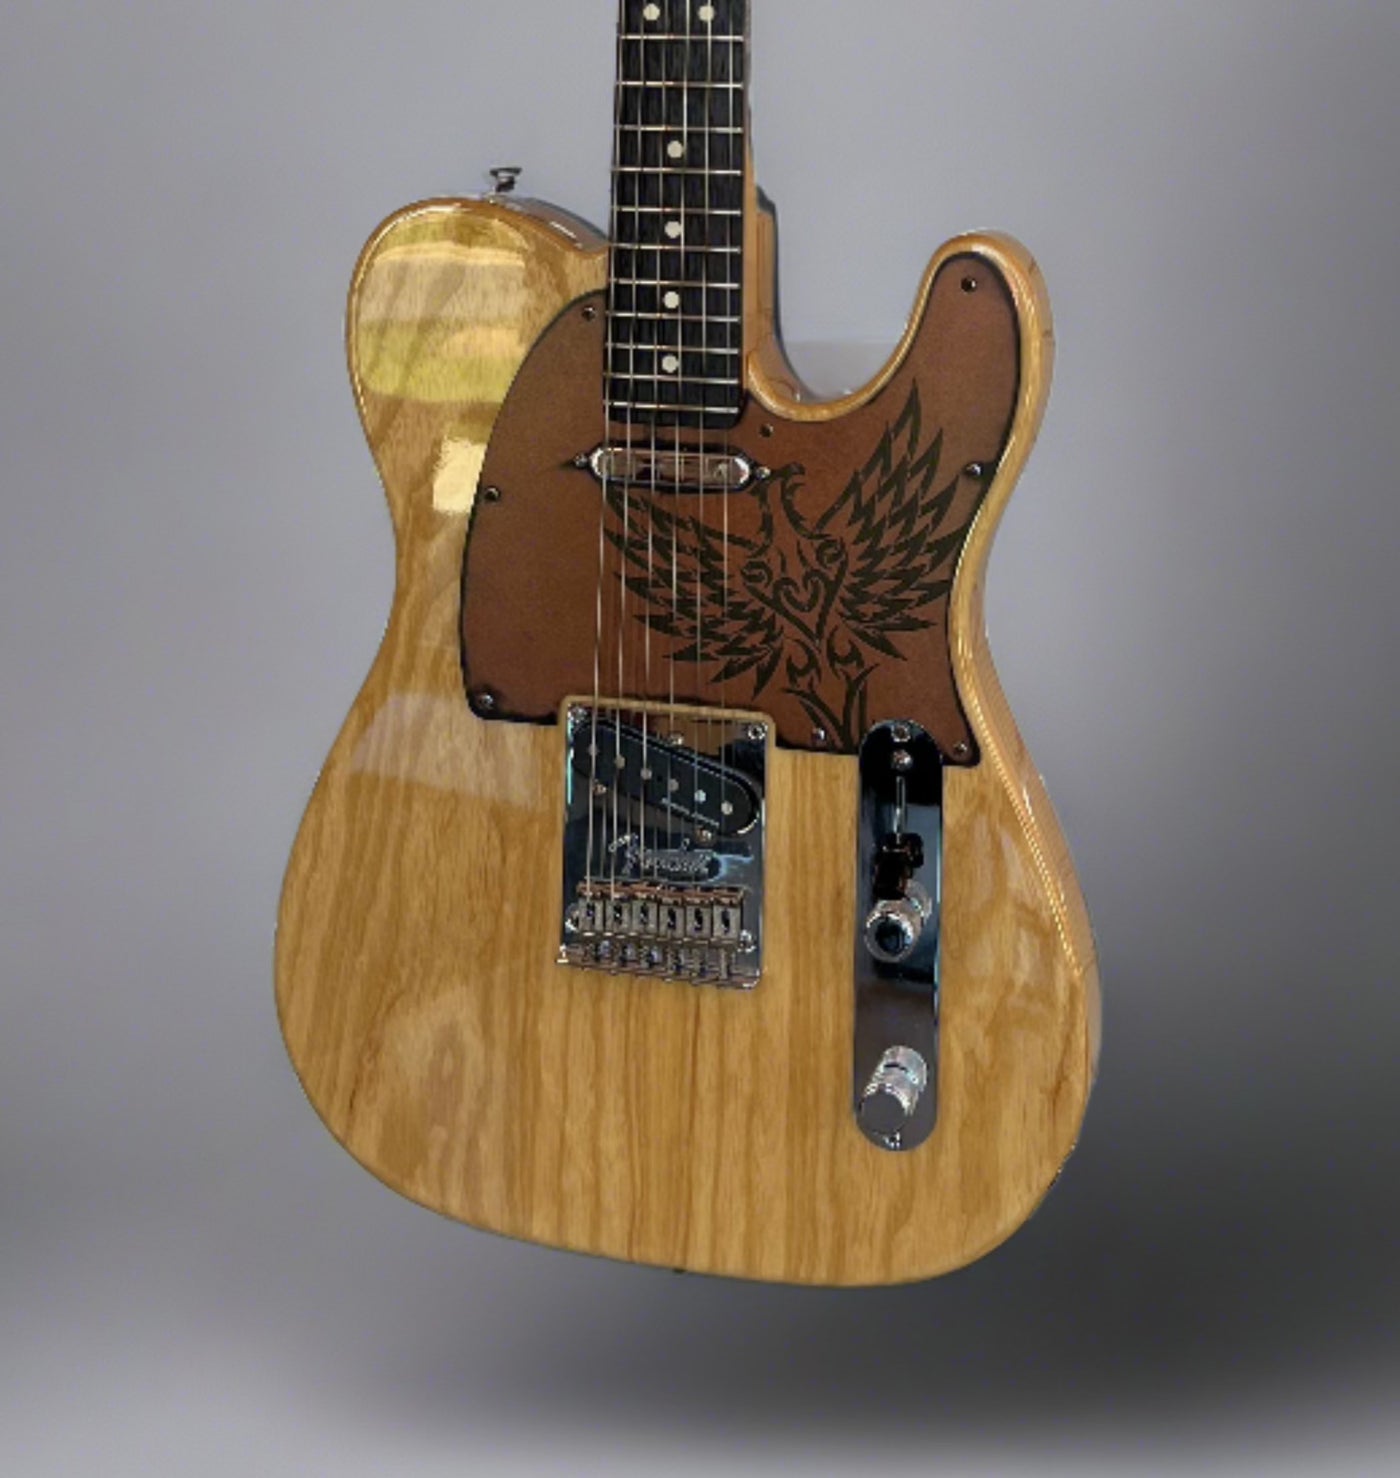 Fender American telecaster